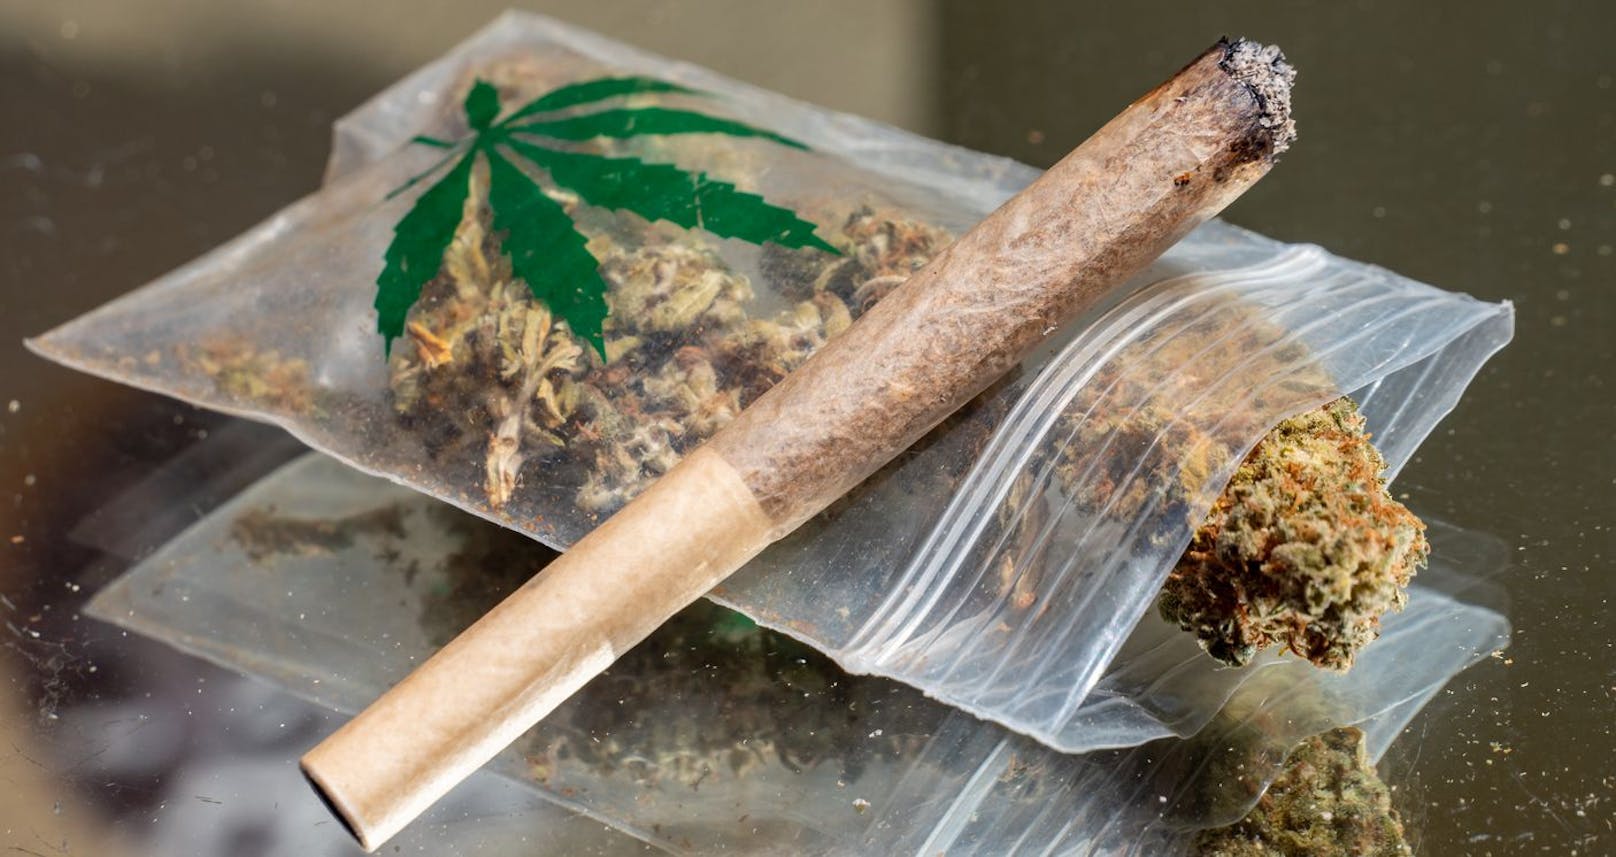 Ab Juni wird das Wort "Marihuana" im gesamten Revised Code of Washington gestrichen und durch "Cannabis" ersetzt.